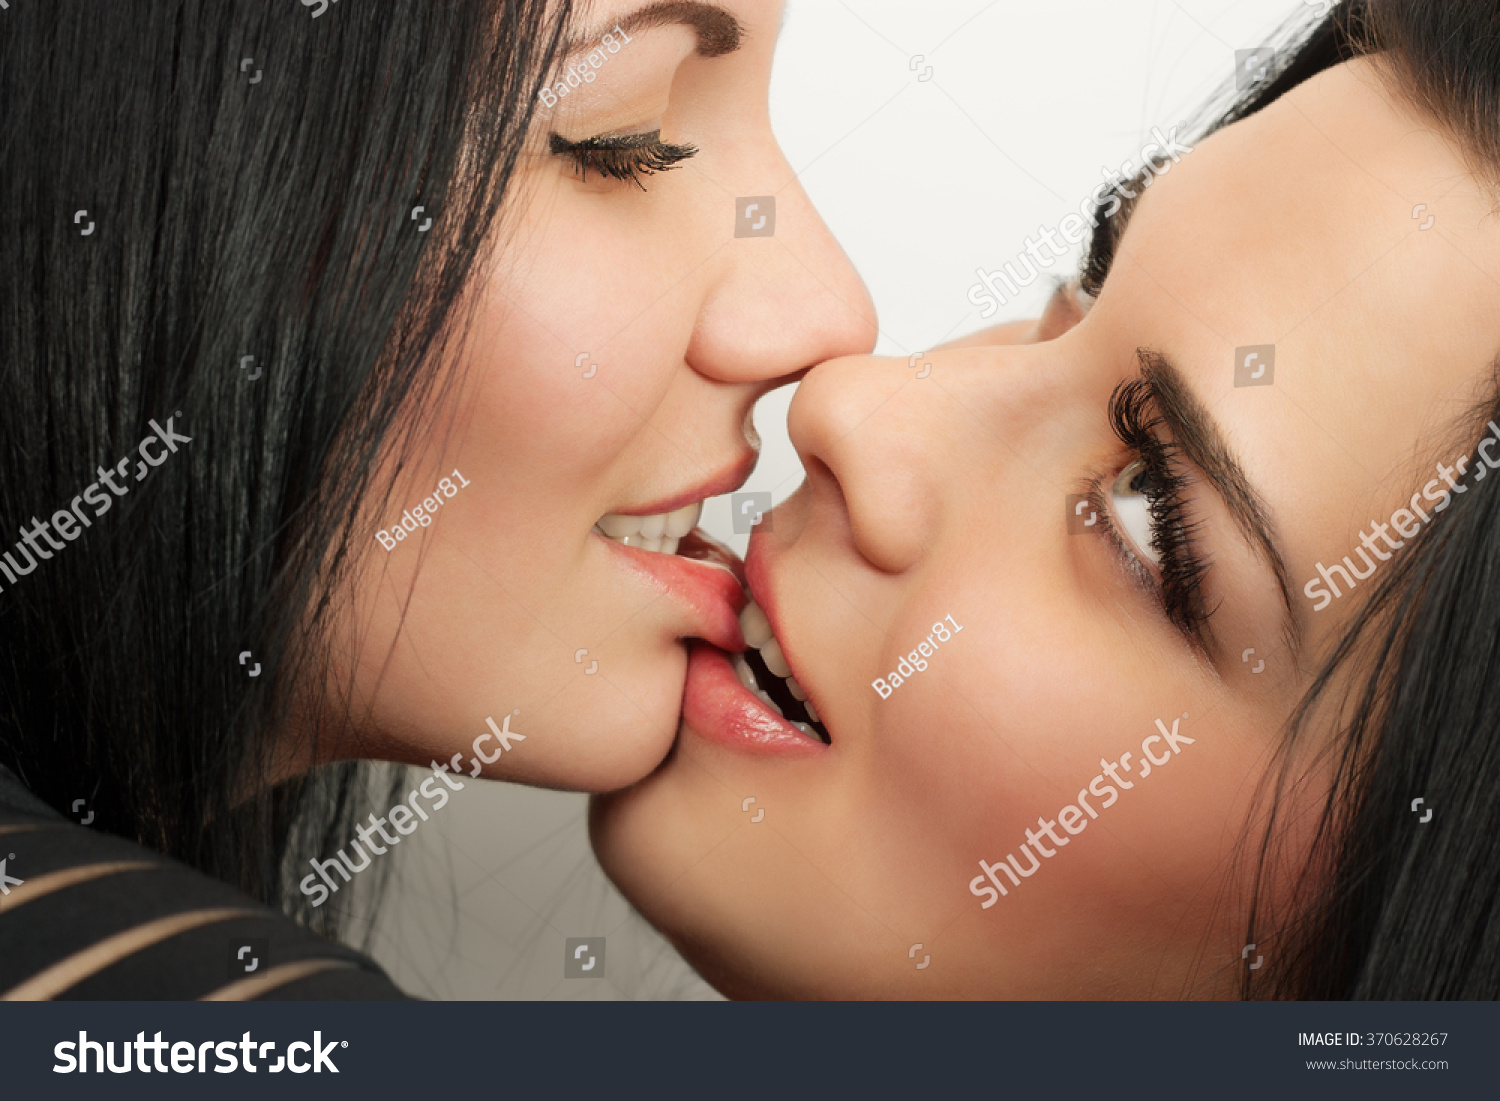 Лесбиянка лижет анус своей девушки